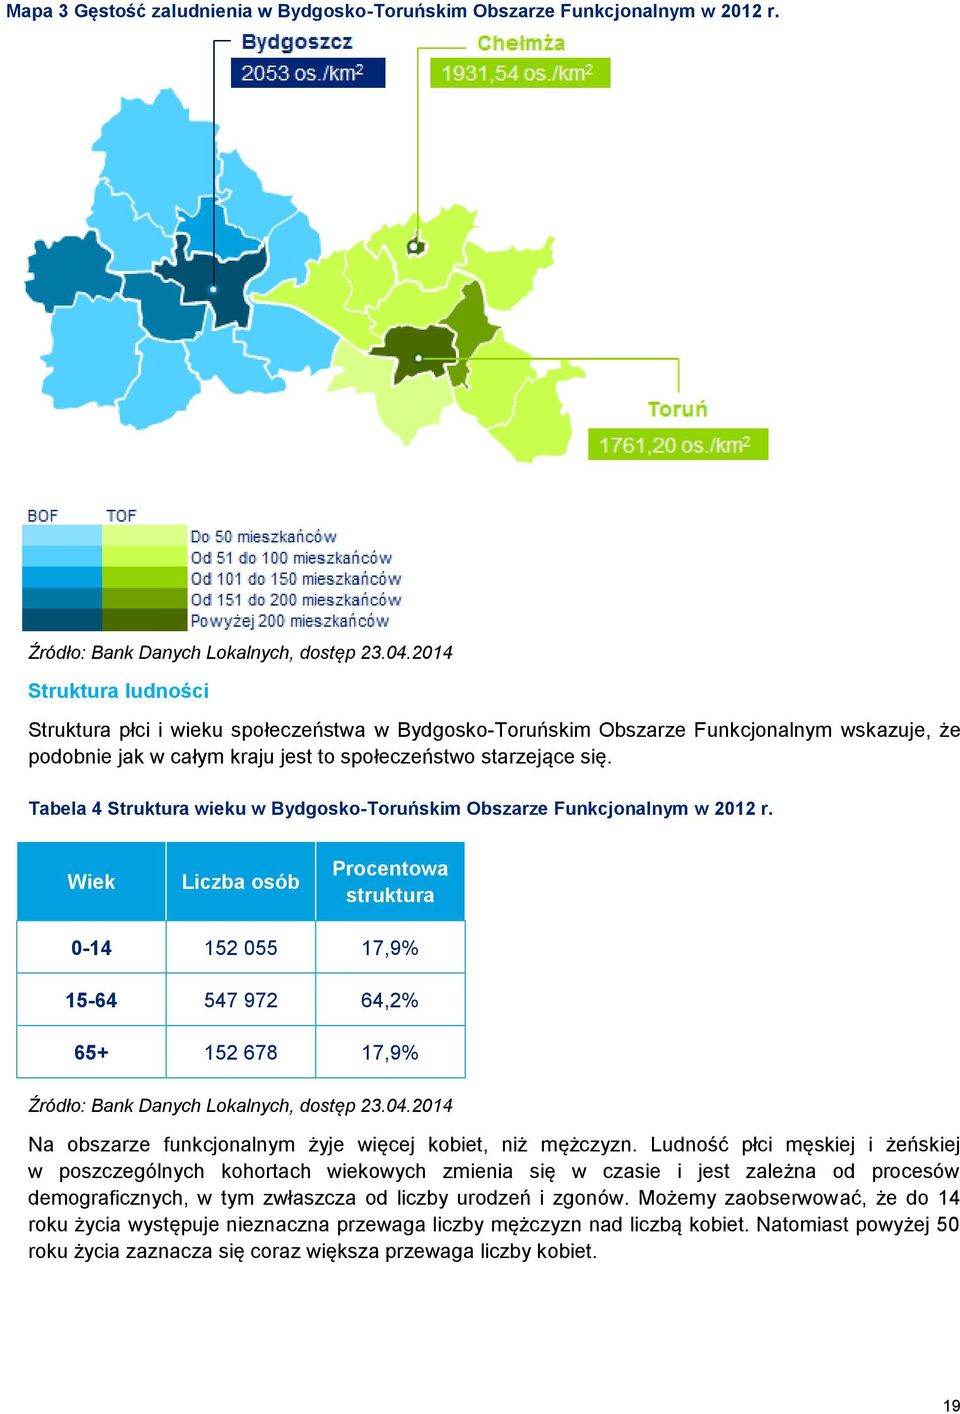 Tabela 4 Struktura wieku w Bydgosko-Toruńskim Obszarze Funkcjonalnym w 2012 r.